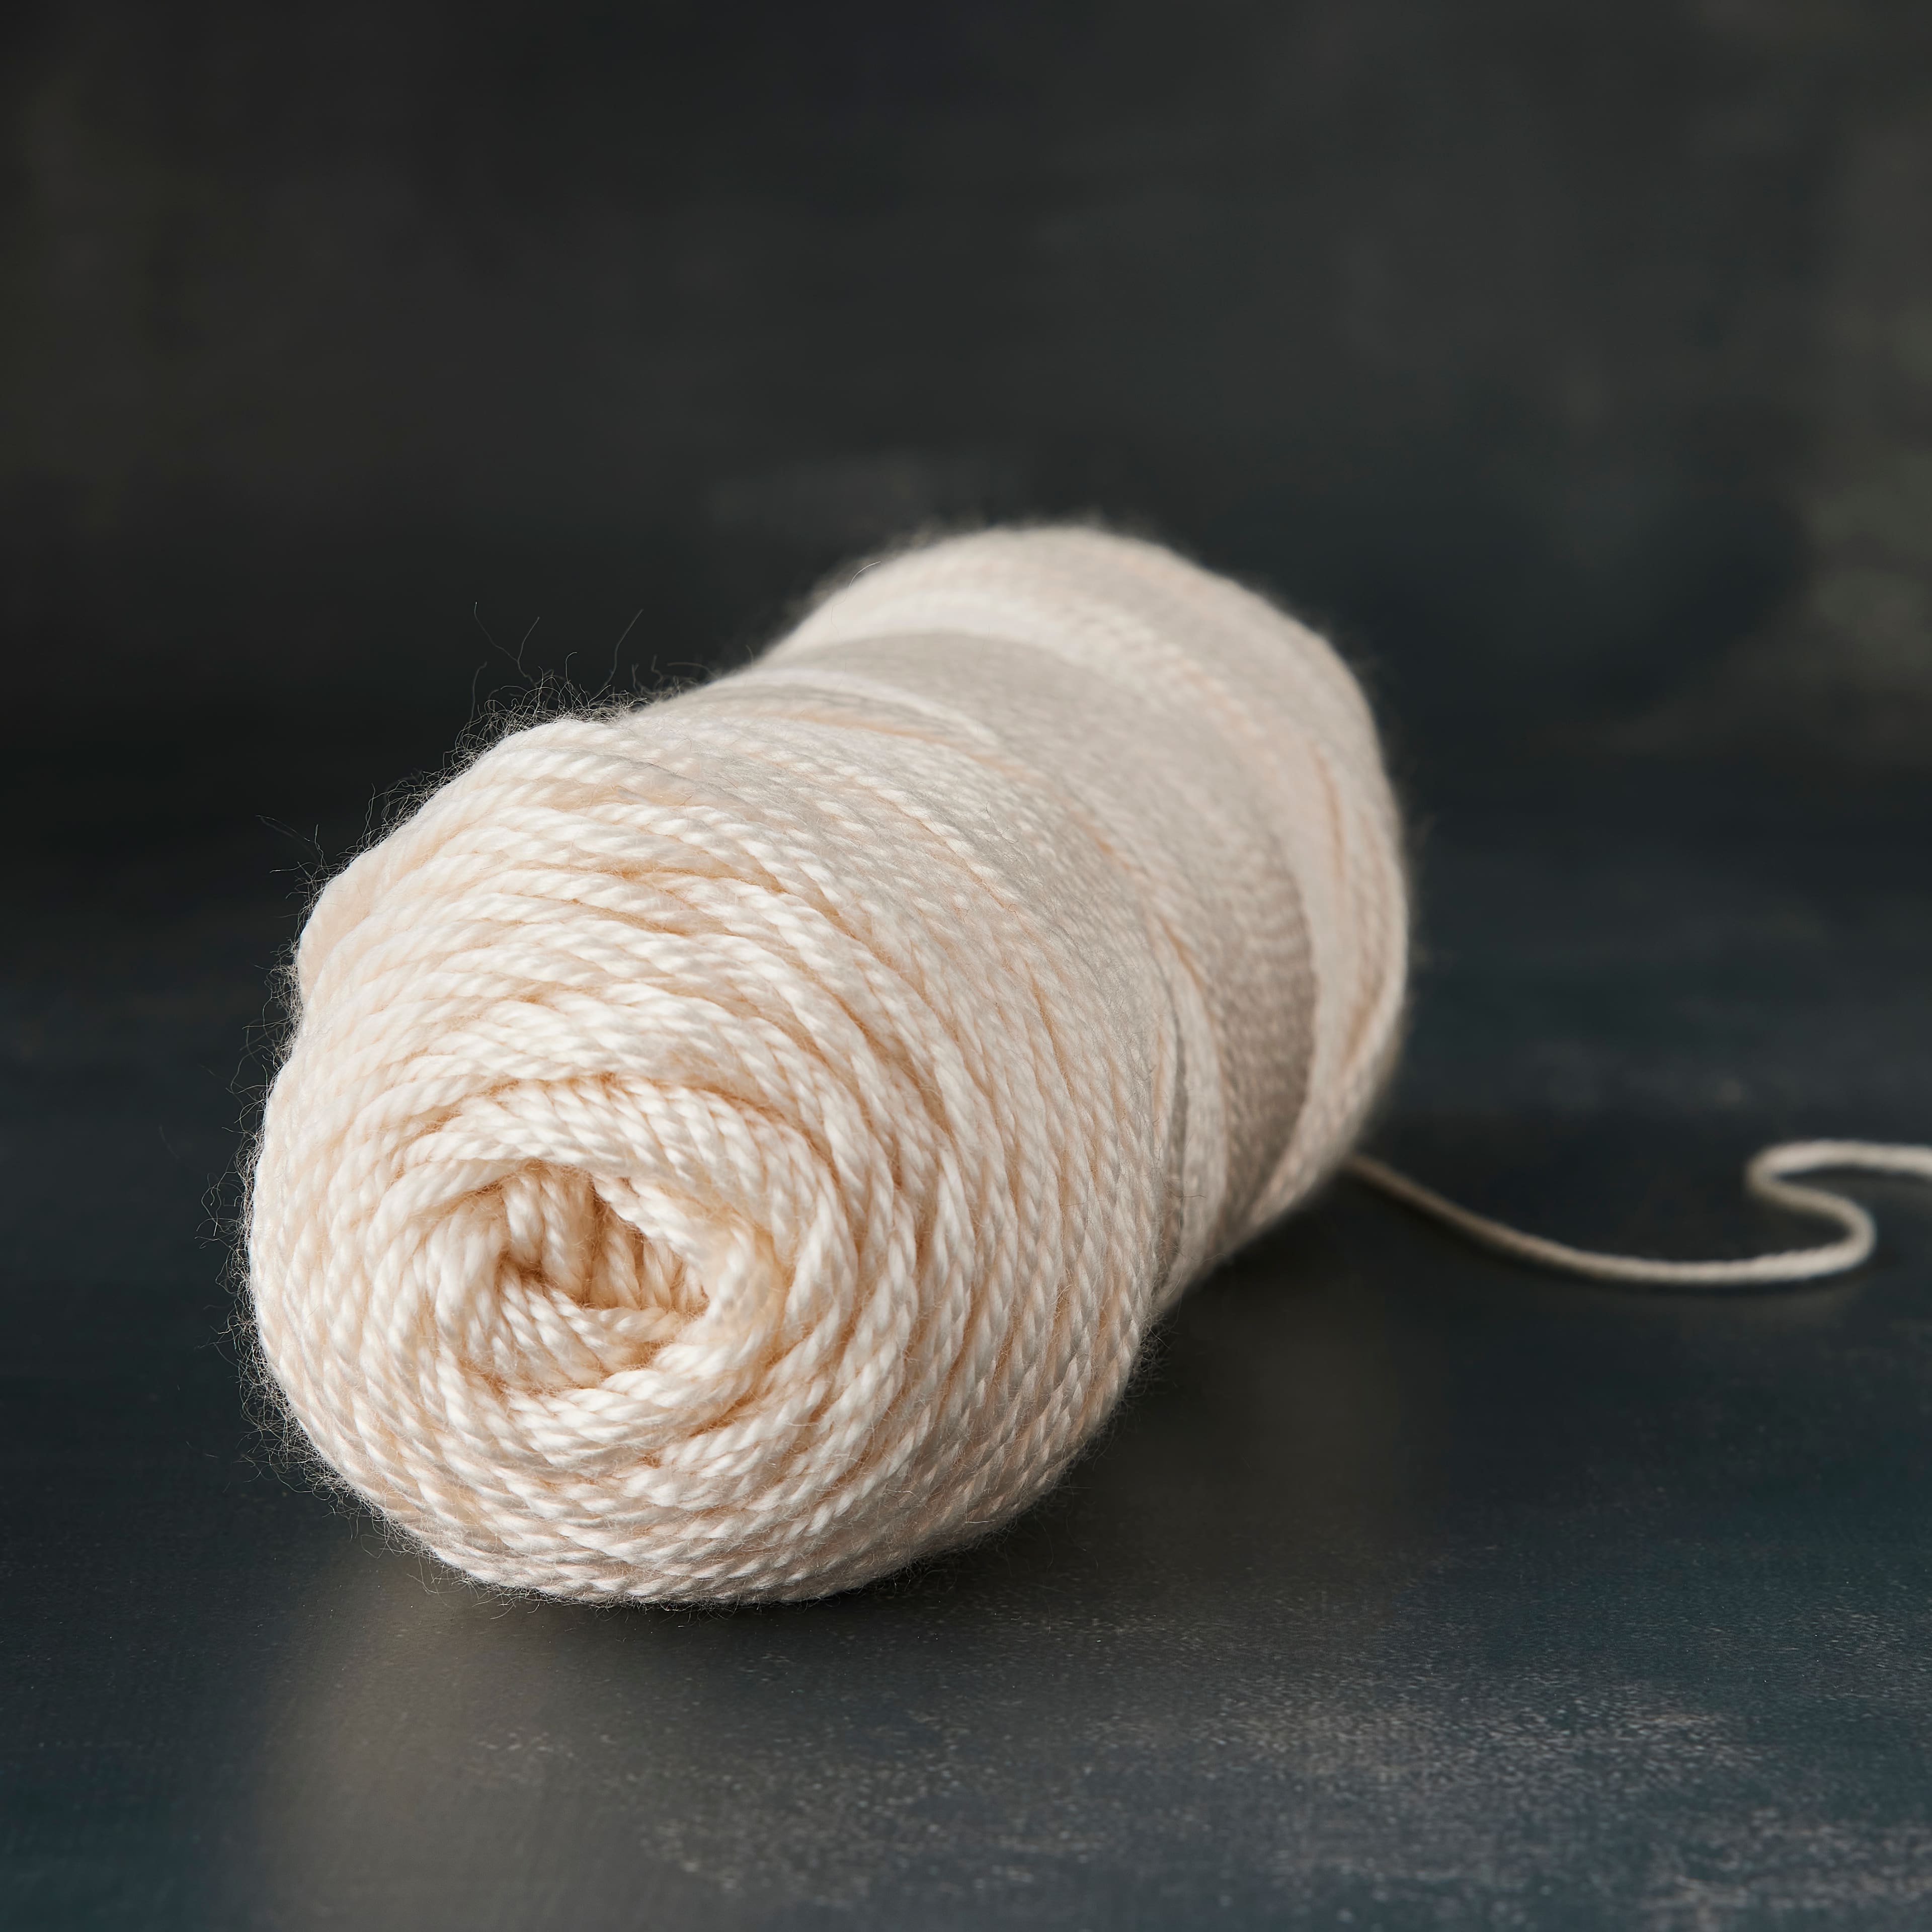 Soft &#x26; Shiny Solid Yarn by Loops &#x26; Threads&#xAE;